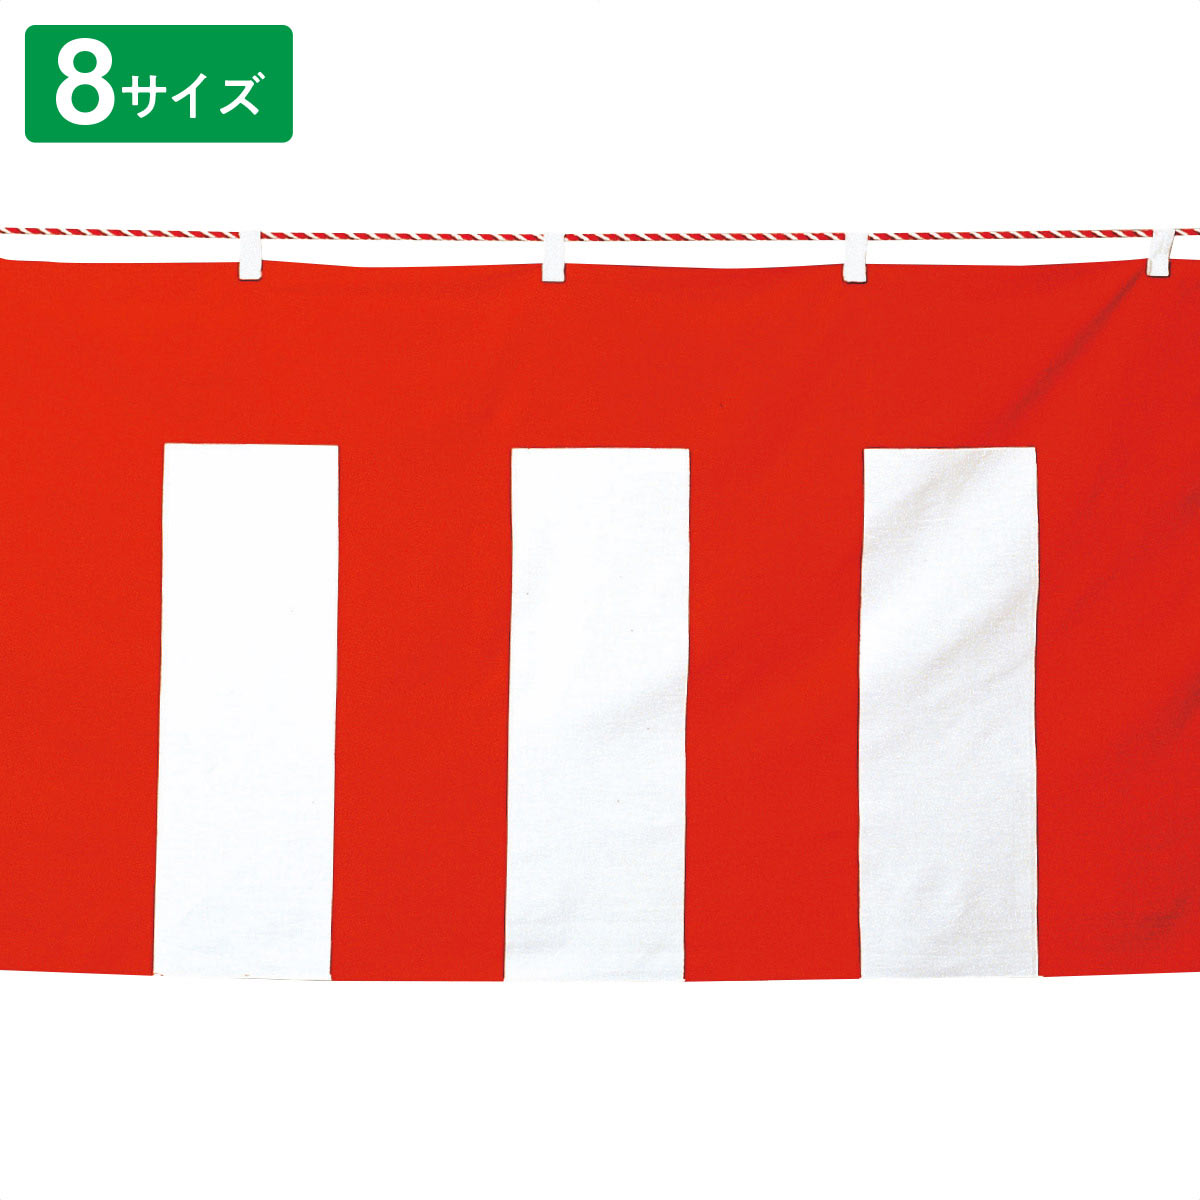 紅白幕(ポリエステル)8サイズ 45cmx5.4m【通販】ストア・エキスプレス